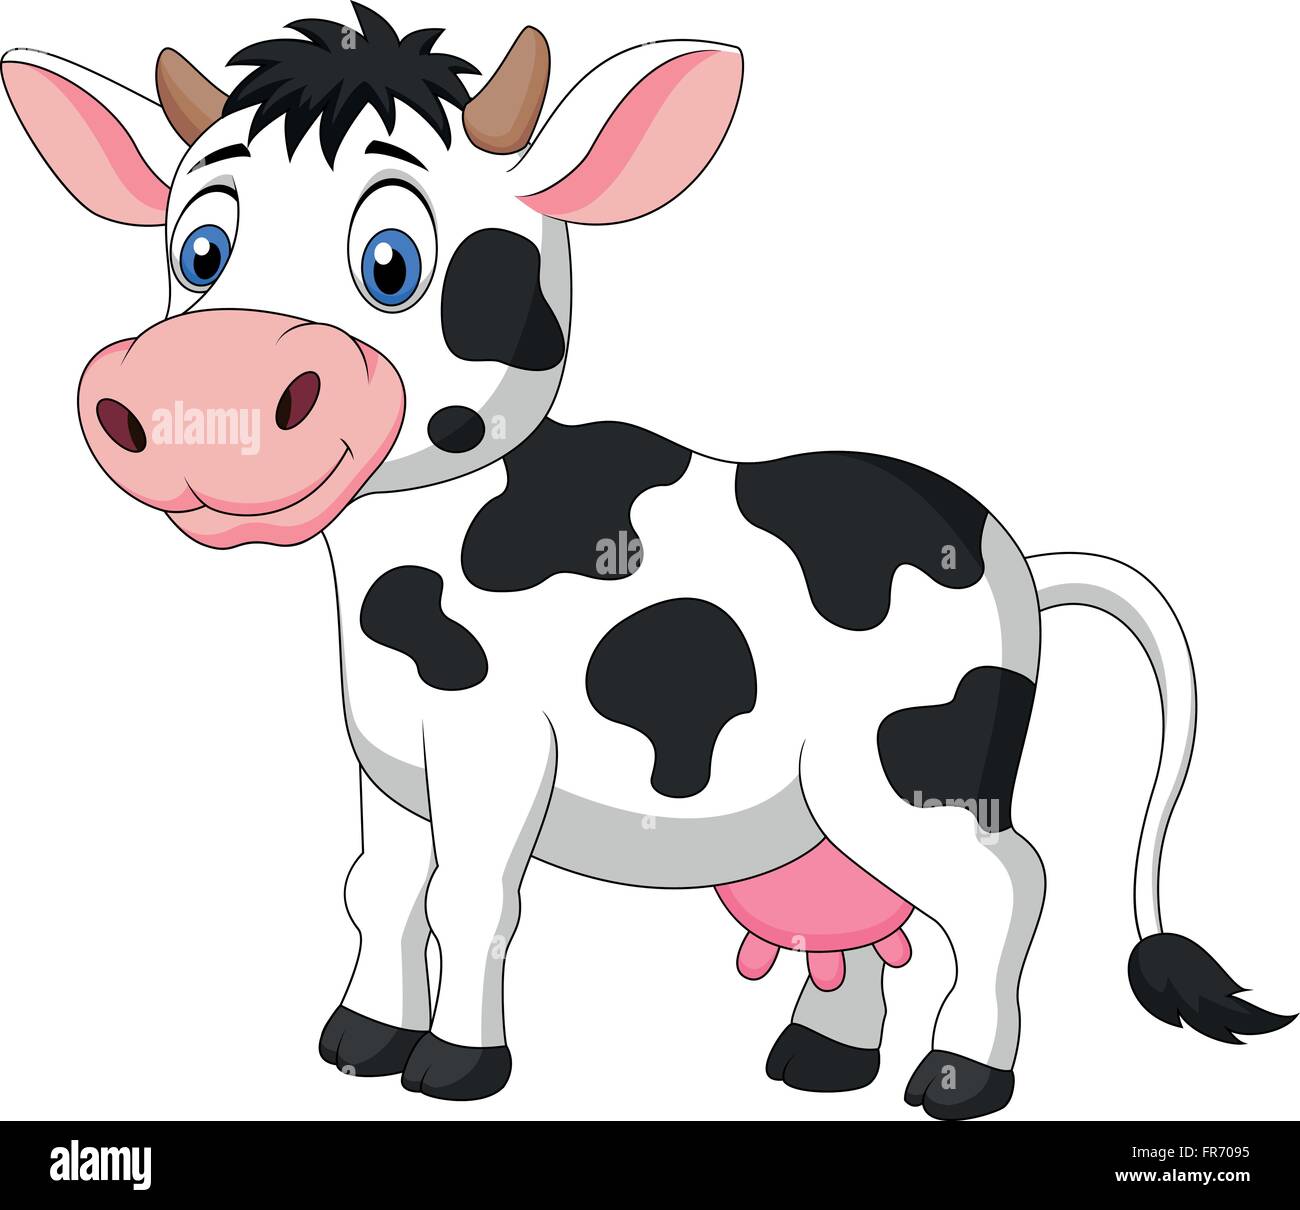 Cute Dibujos Animados De Vaca Sentado Imagen Vector De Stock Alamy